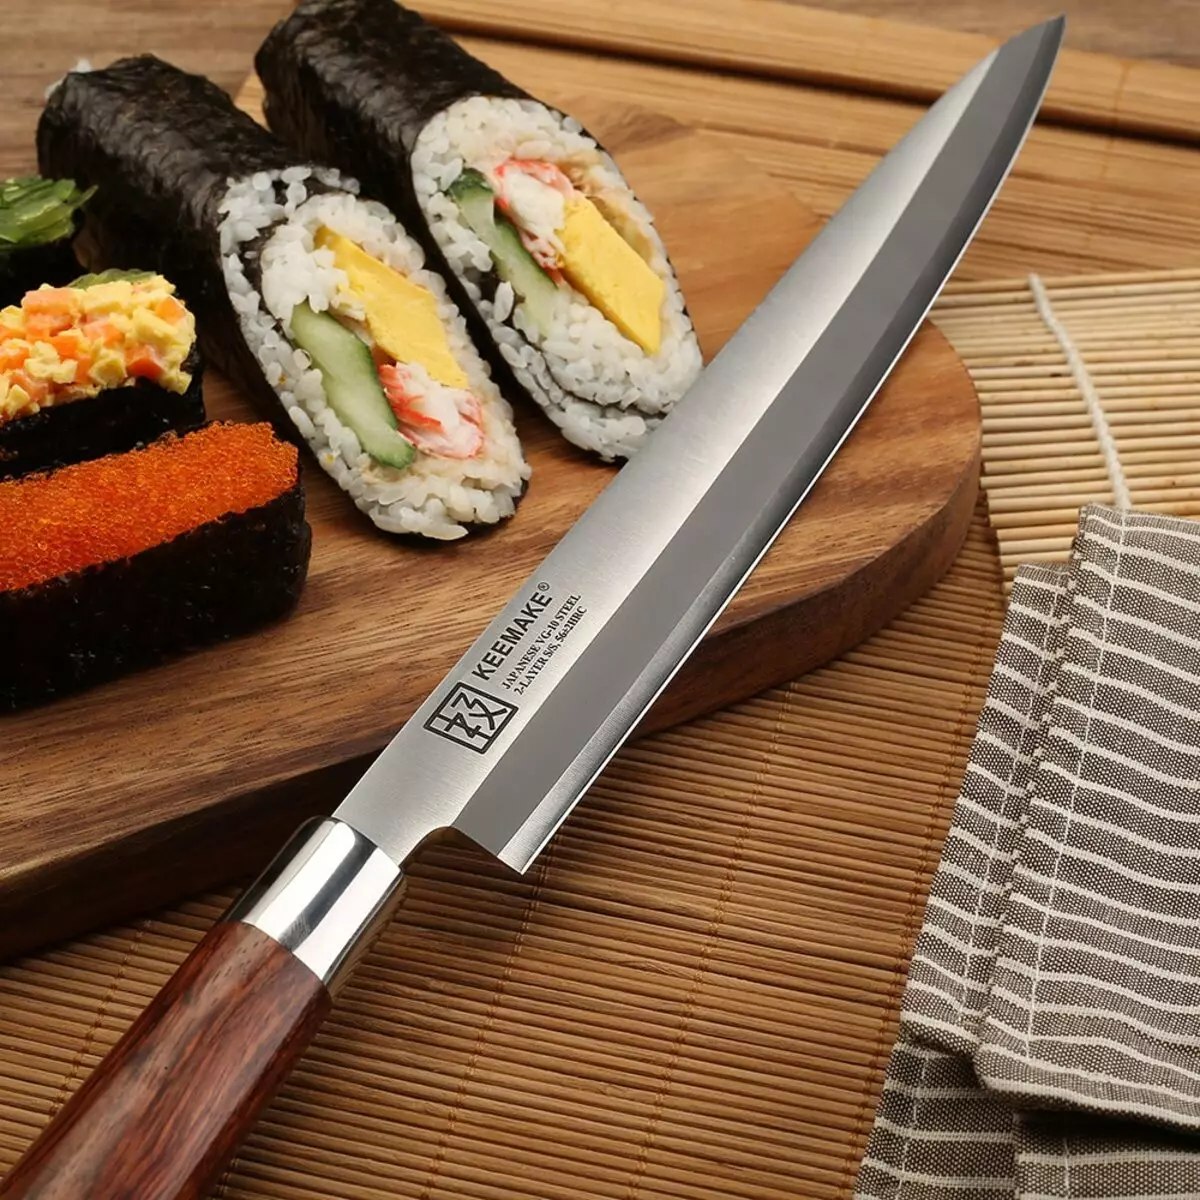 جاپانی باورچی خانے کے چاقو (35 فوٹو): کیومو چاقو کی خصوصیات اور دیگر مینوفیکچررز چاقو. نکیری اور ڈیب، سینٹوکو اور دیگر پرجاتیوں. سیٹ کا انتخاب 24998_2